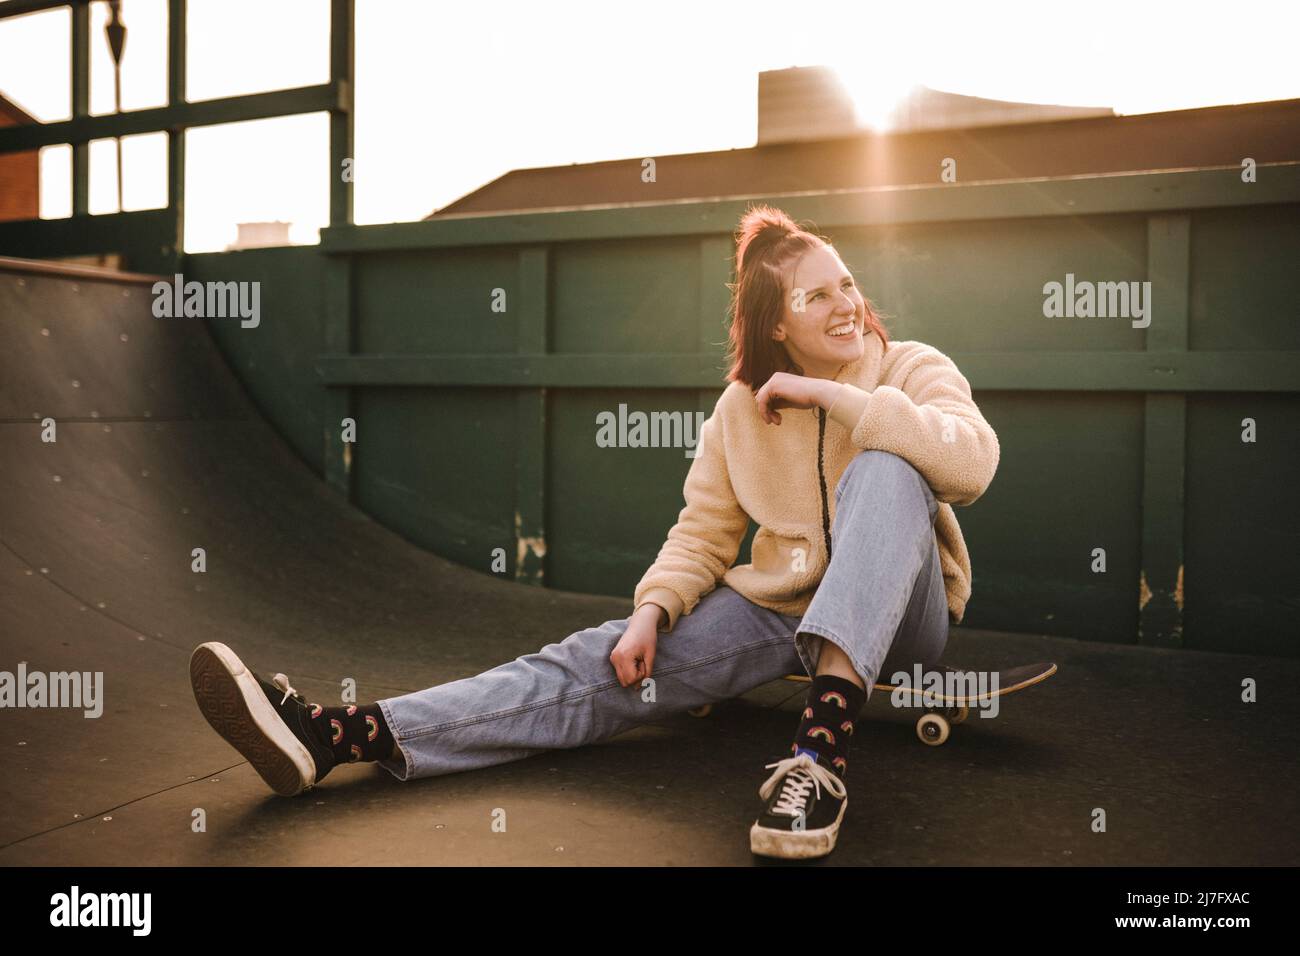 Lächelndes Teenager-Mädchen, das auf dem Skateboard sitzt Stockfoto